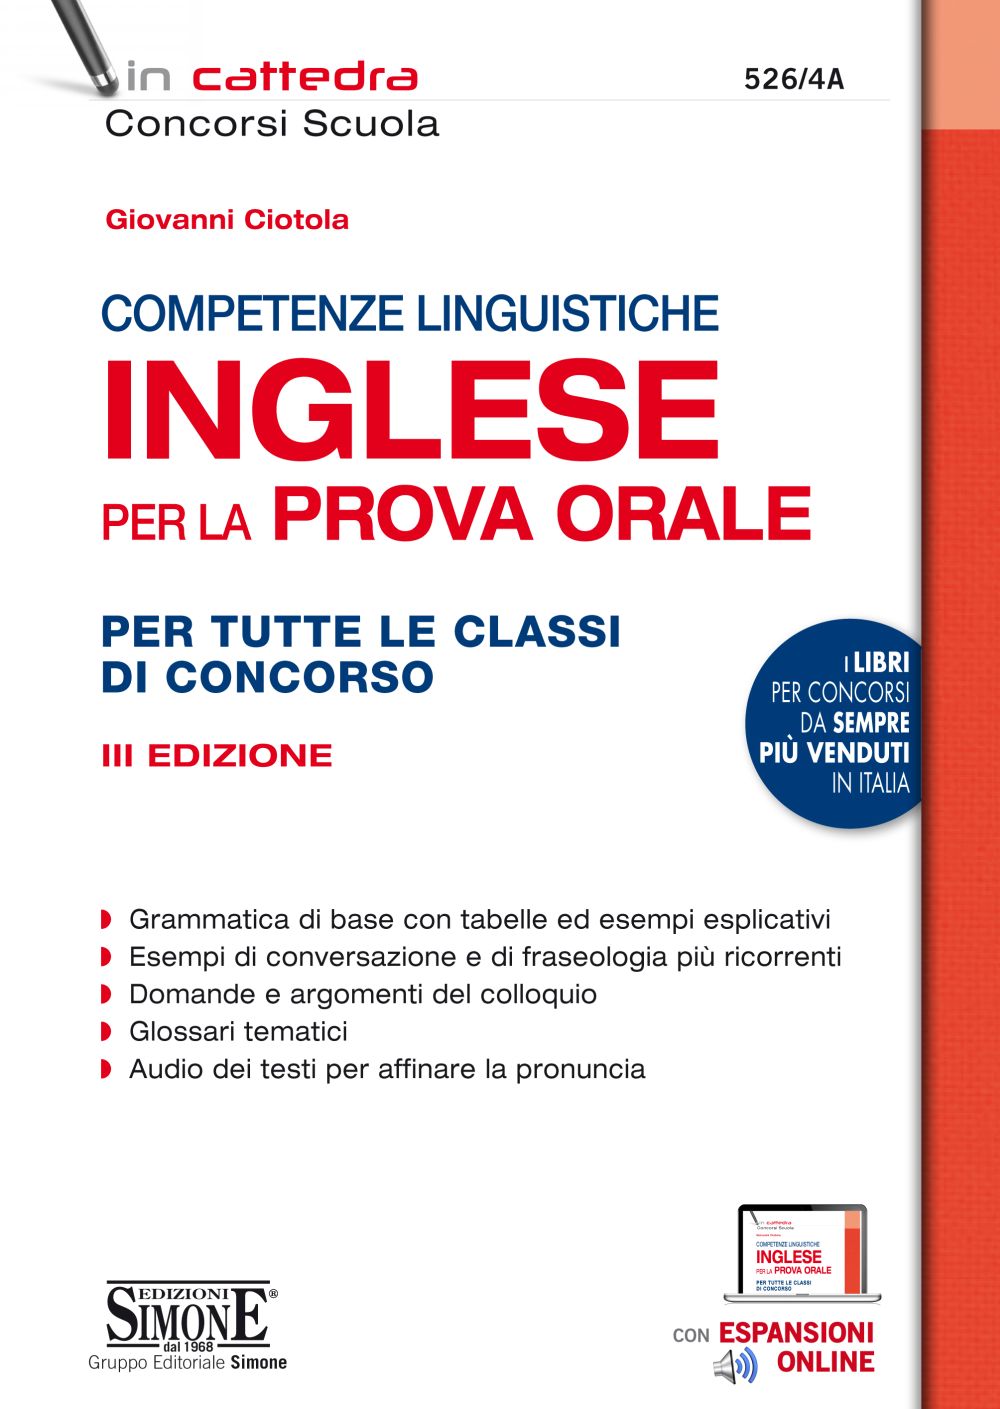 Competenze Linguistiche INGLESE per la prova orale - 526/4A